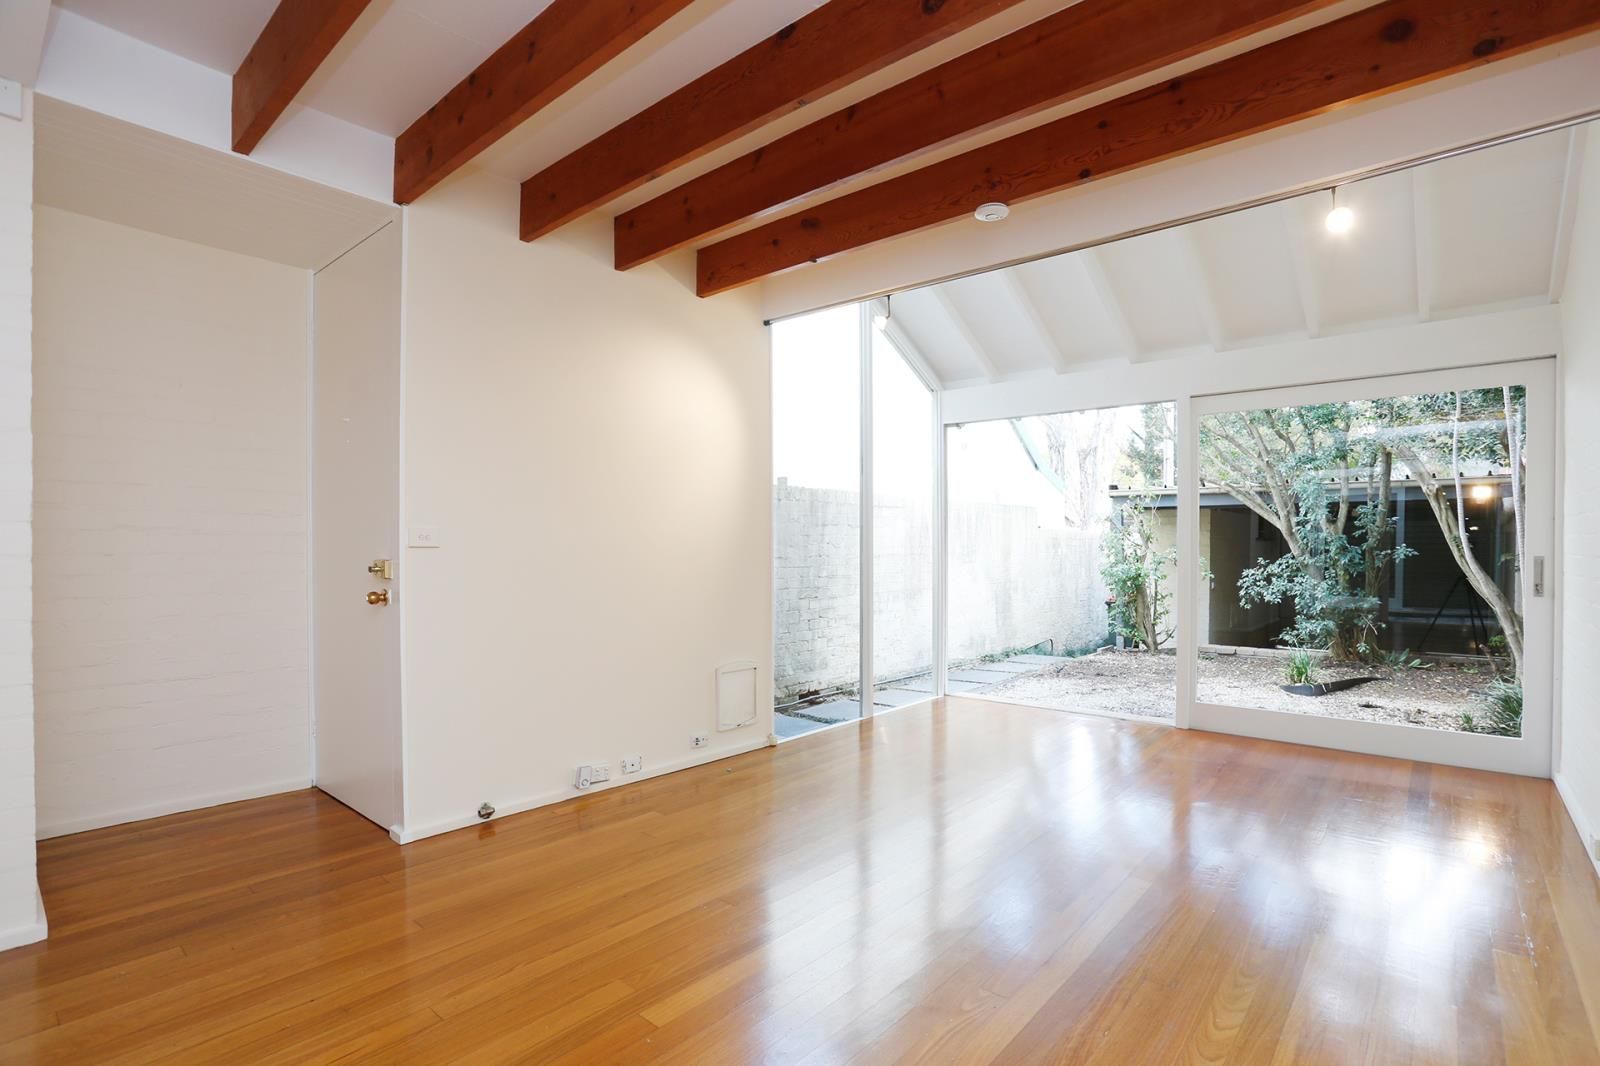 3 bedrooms House in 102 Garden Street ALEXANDRIA NSW, 2015